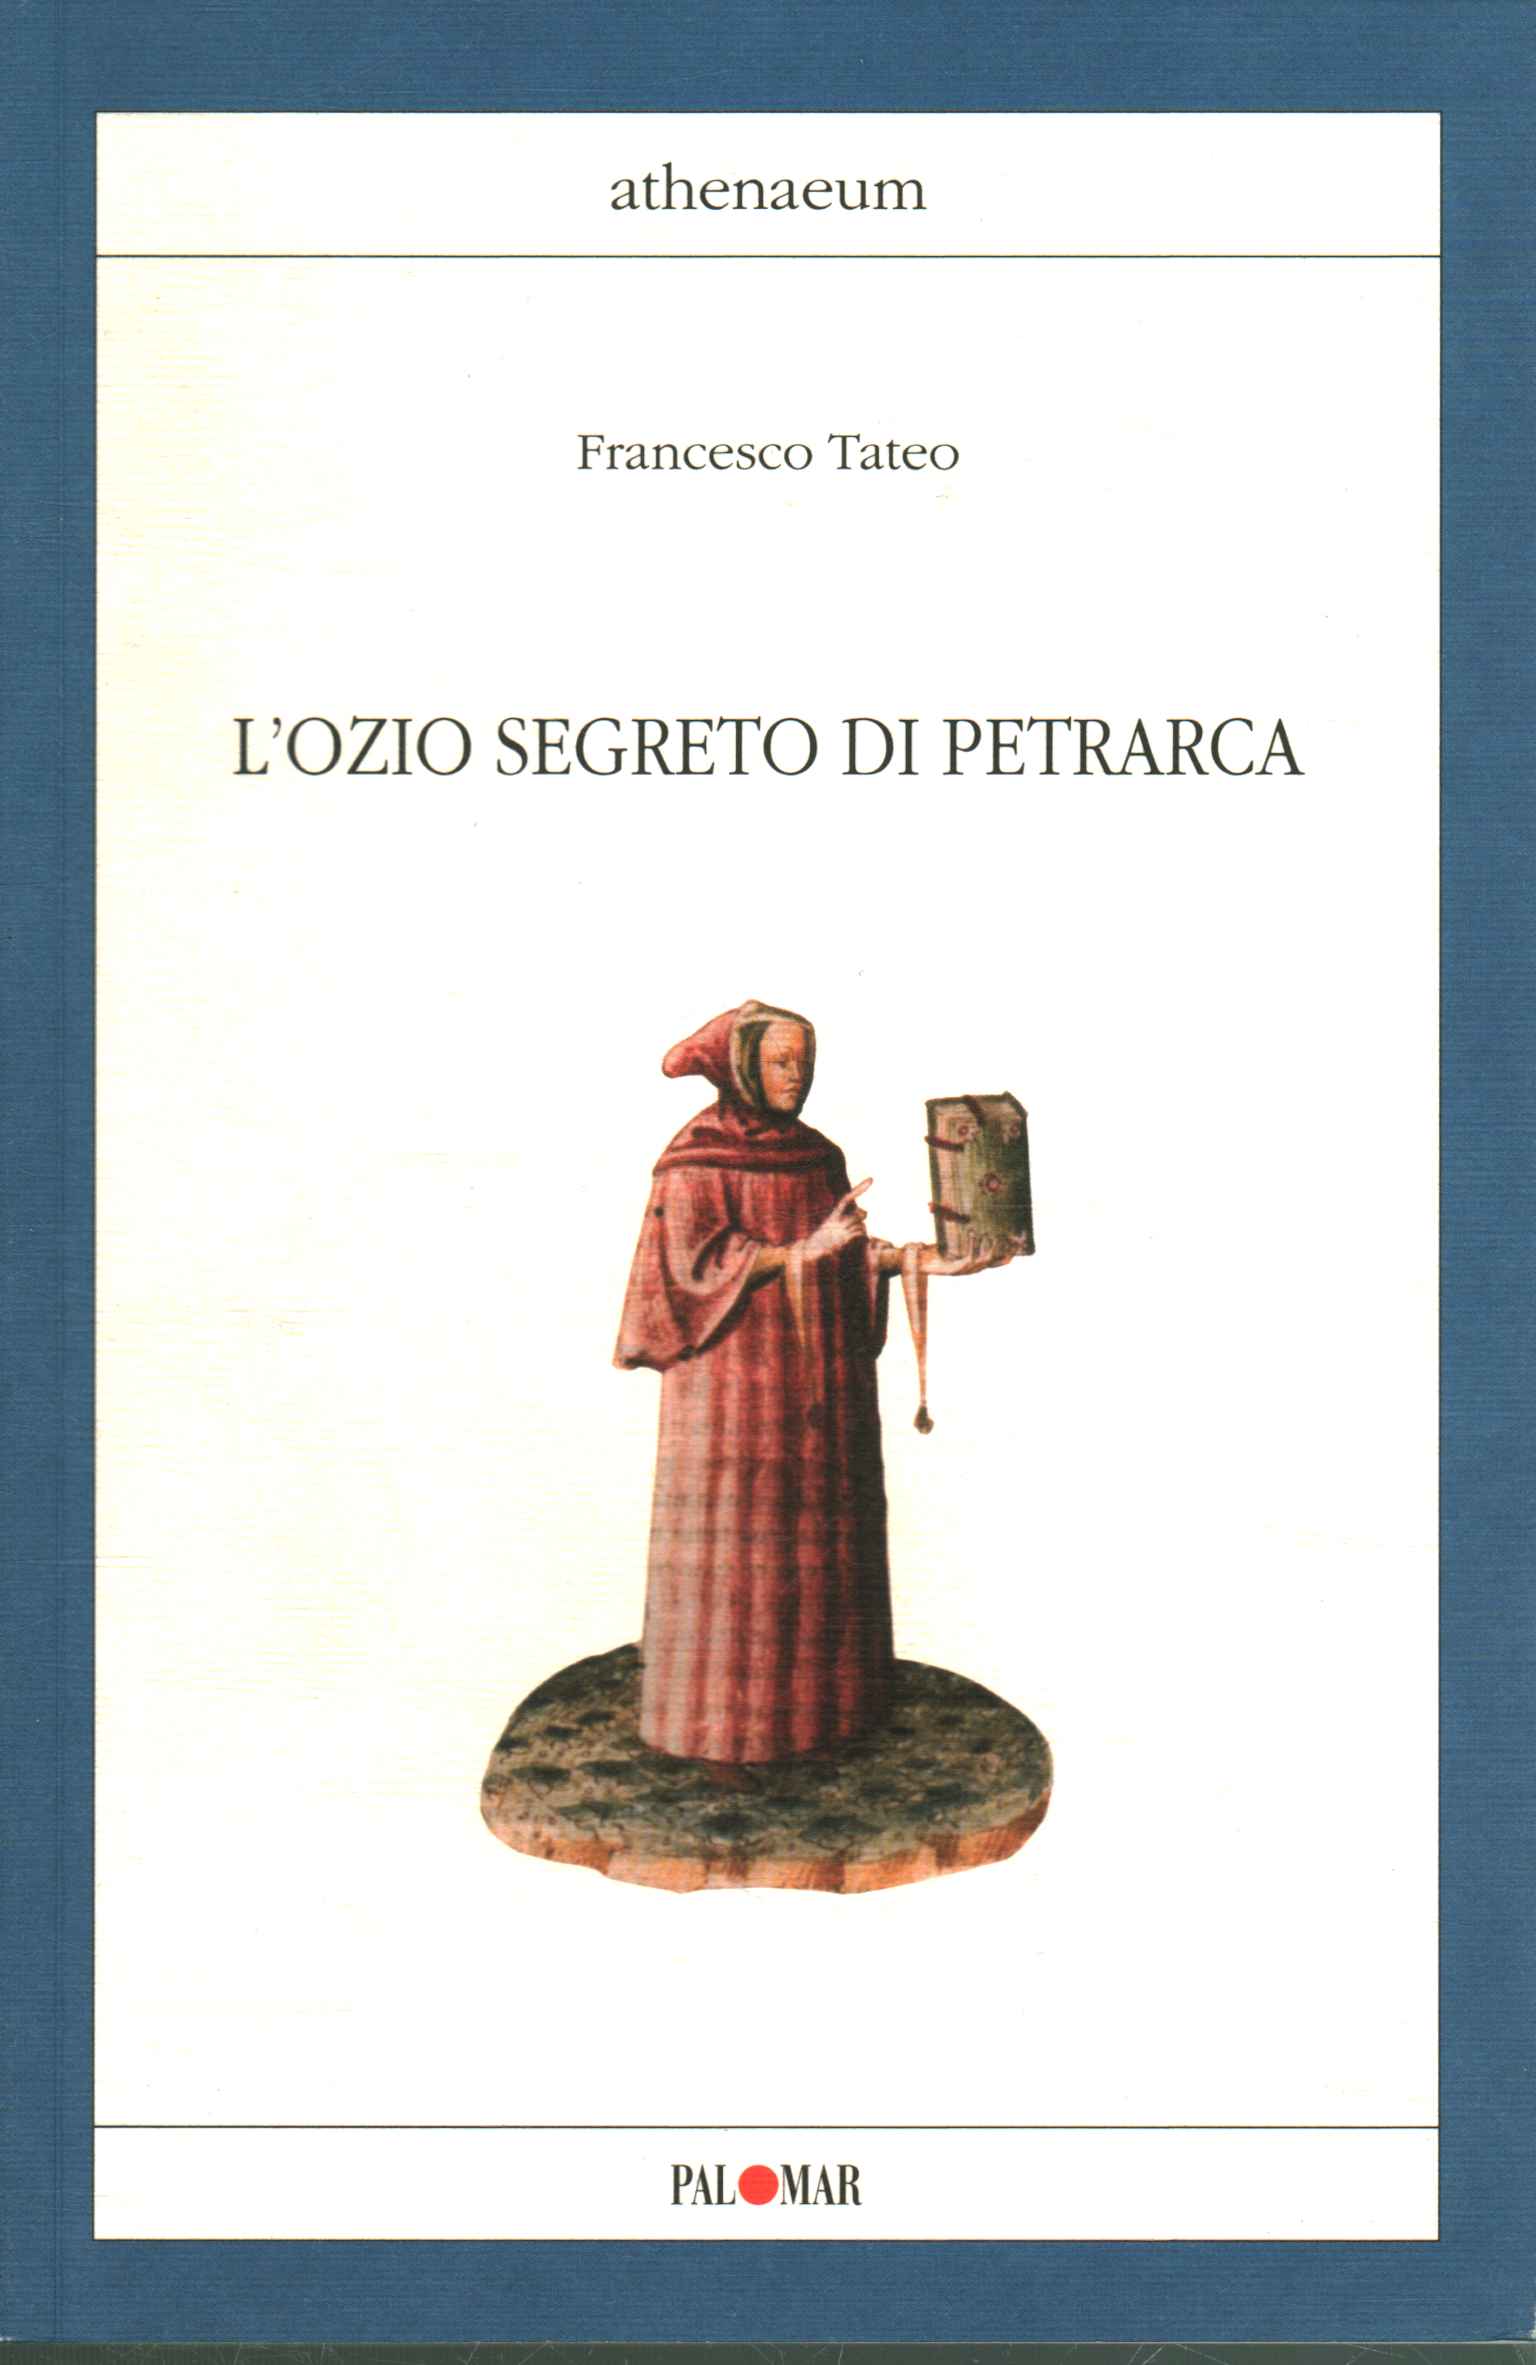 La ociosidad secreta de Petrarca